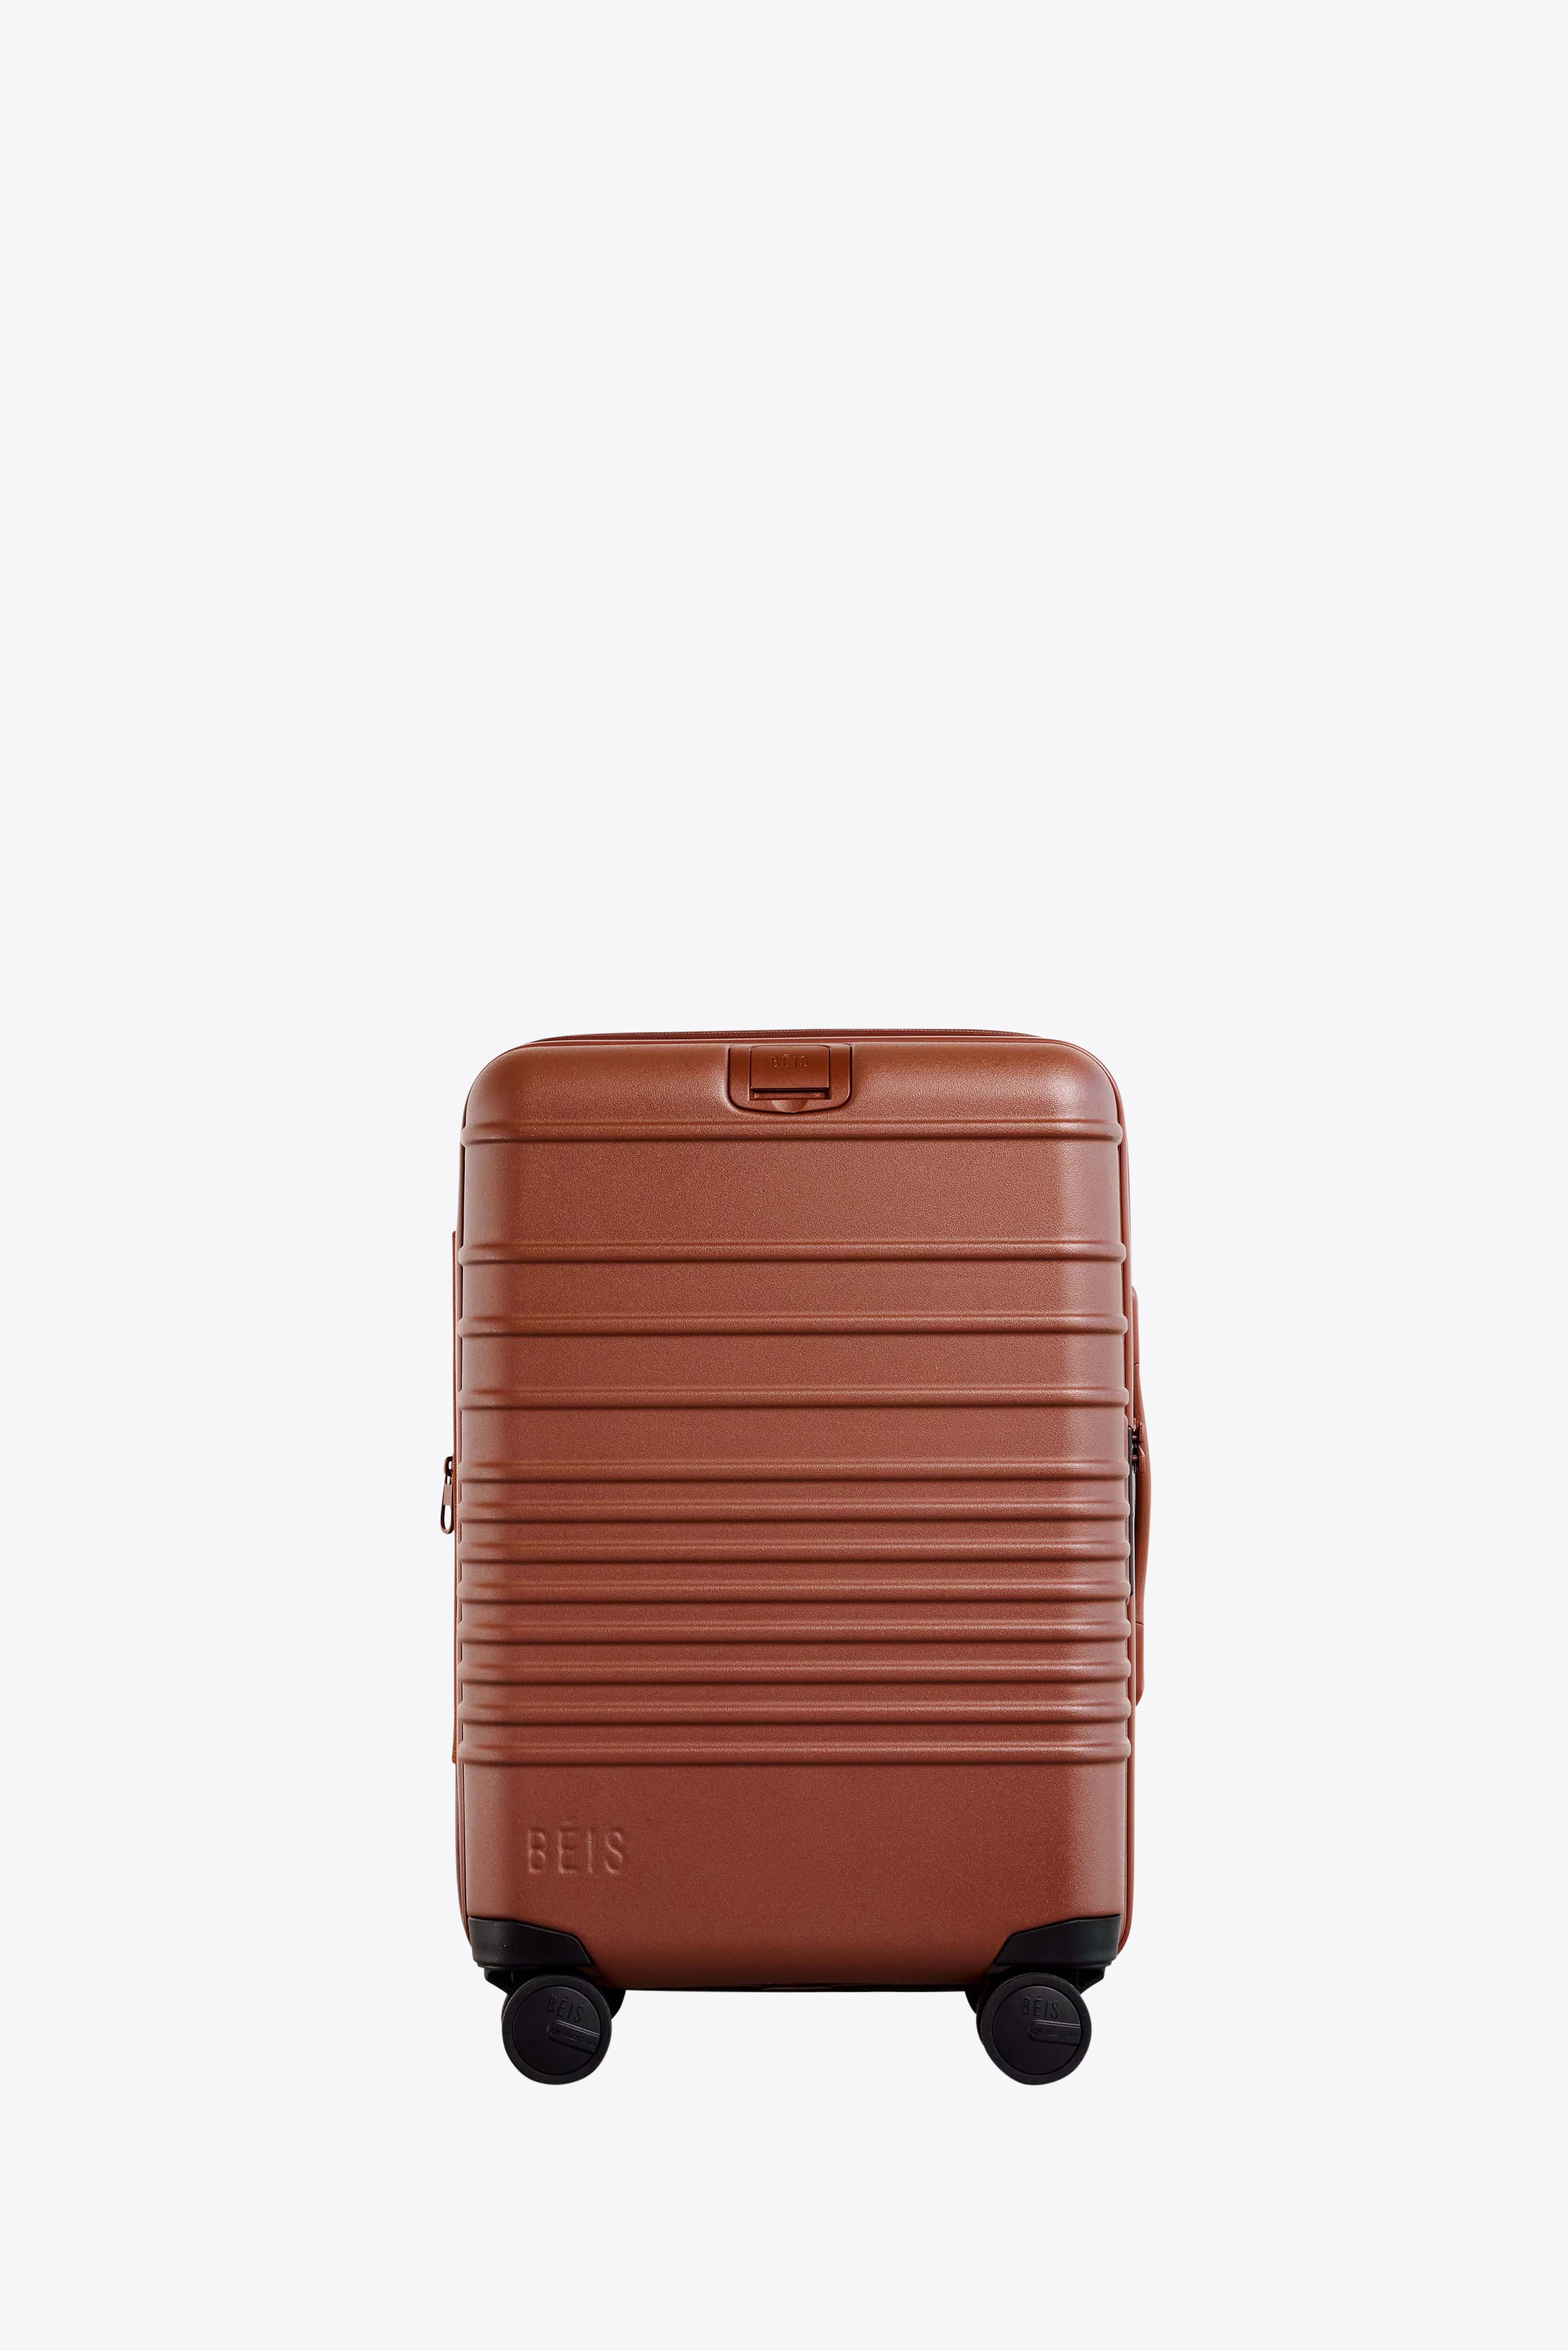 BÉIS 'The Convertible Mini Weekender' in Beige - Mini Travel Weekender Bag